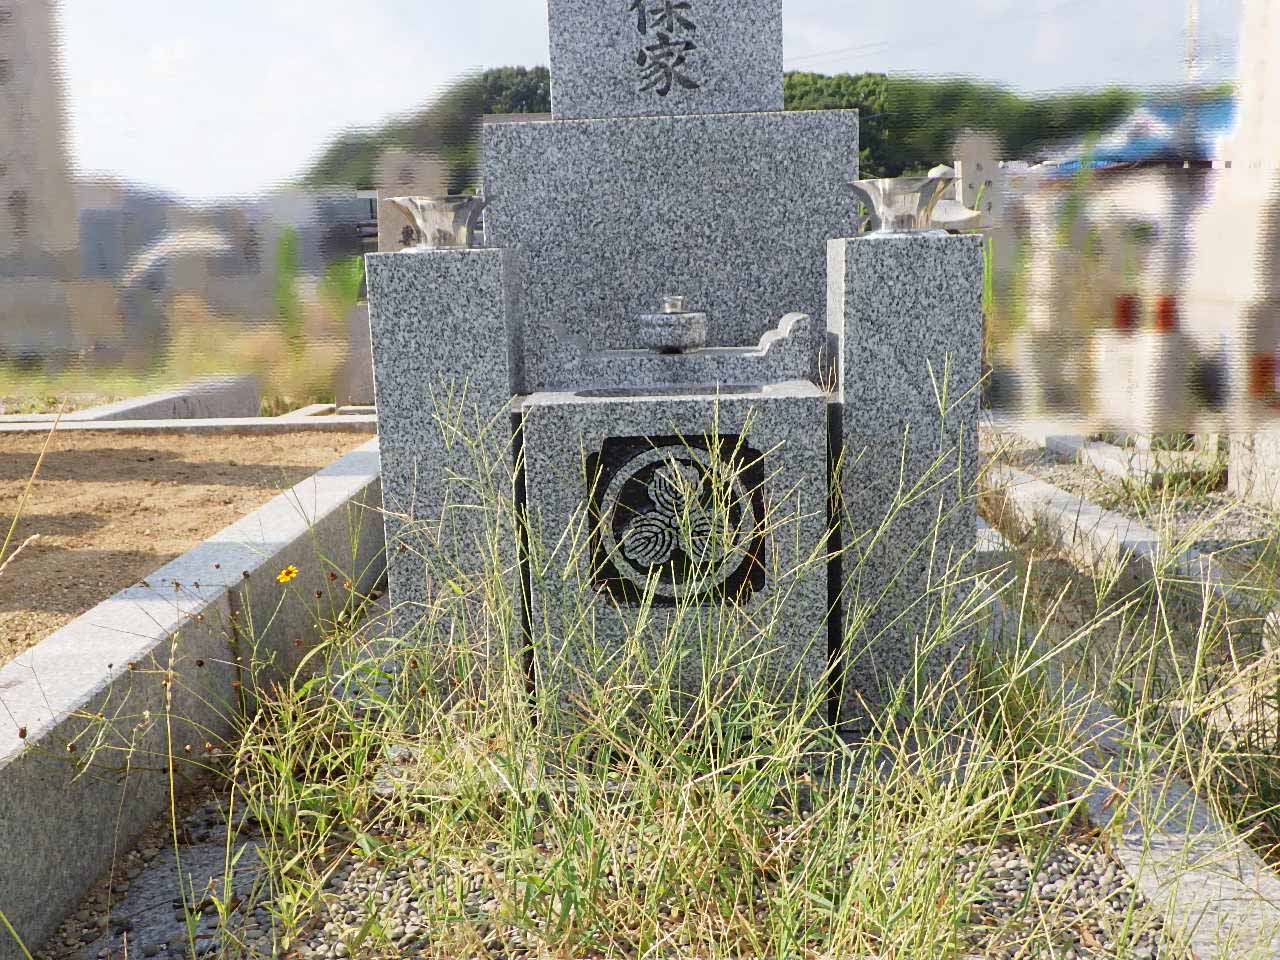 これで解決！！お墓の雑草対策 - 広島県のその他